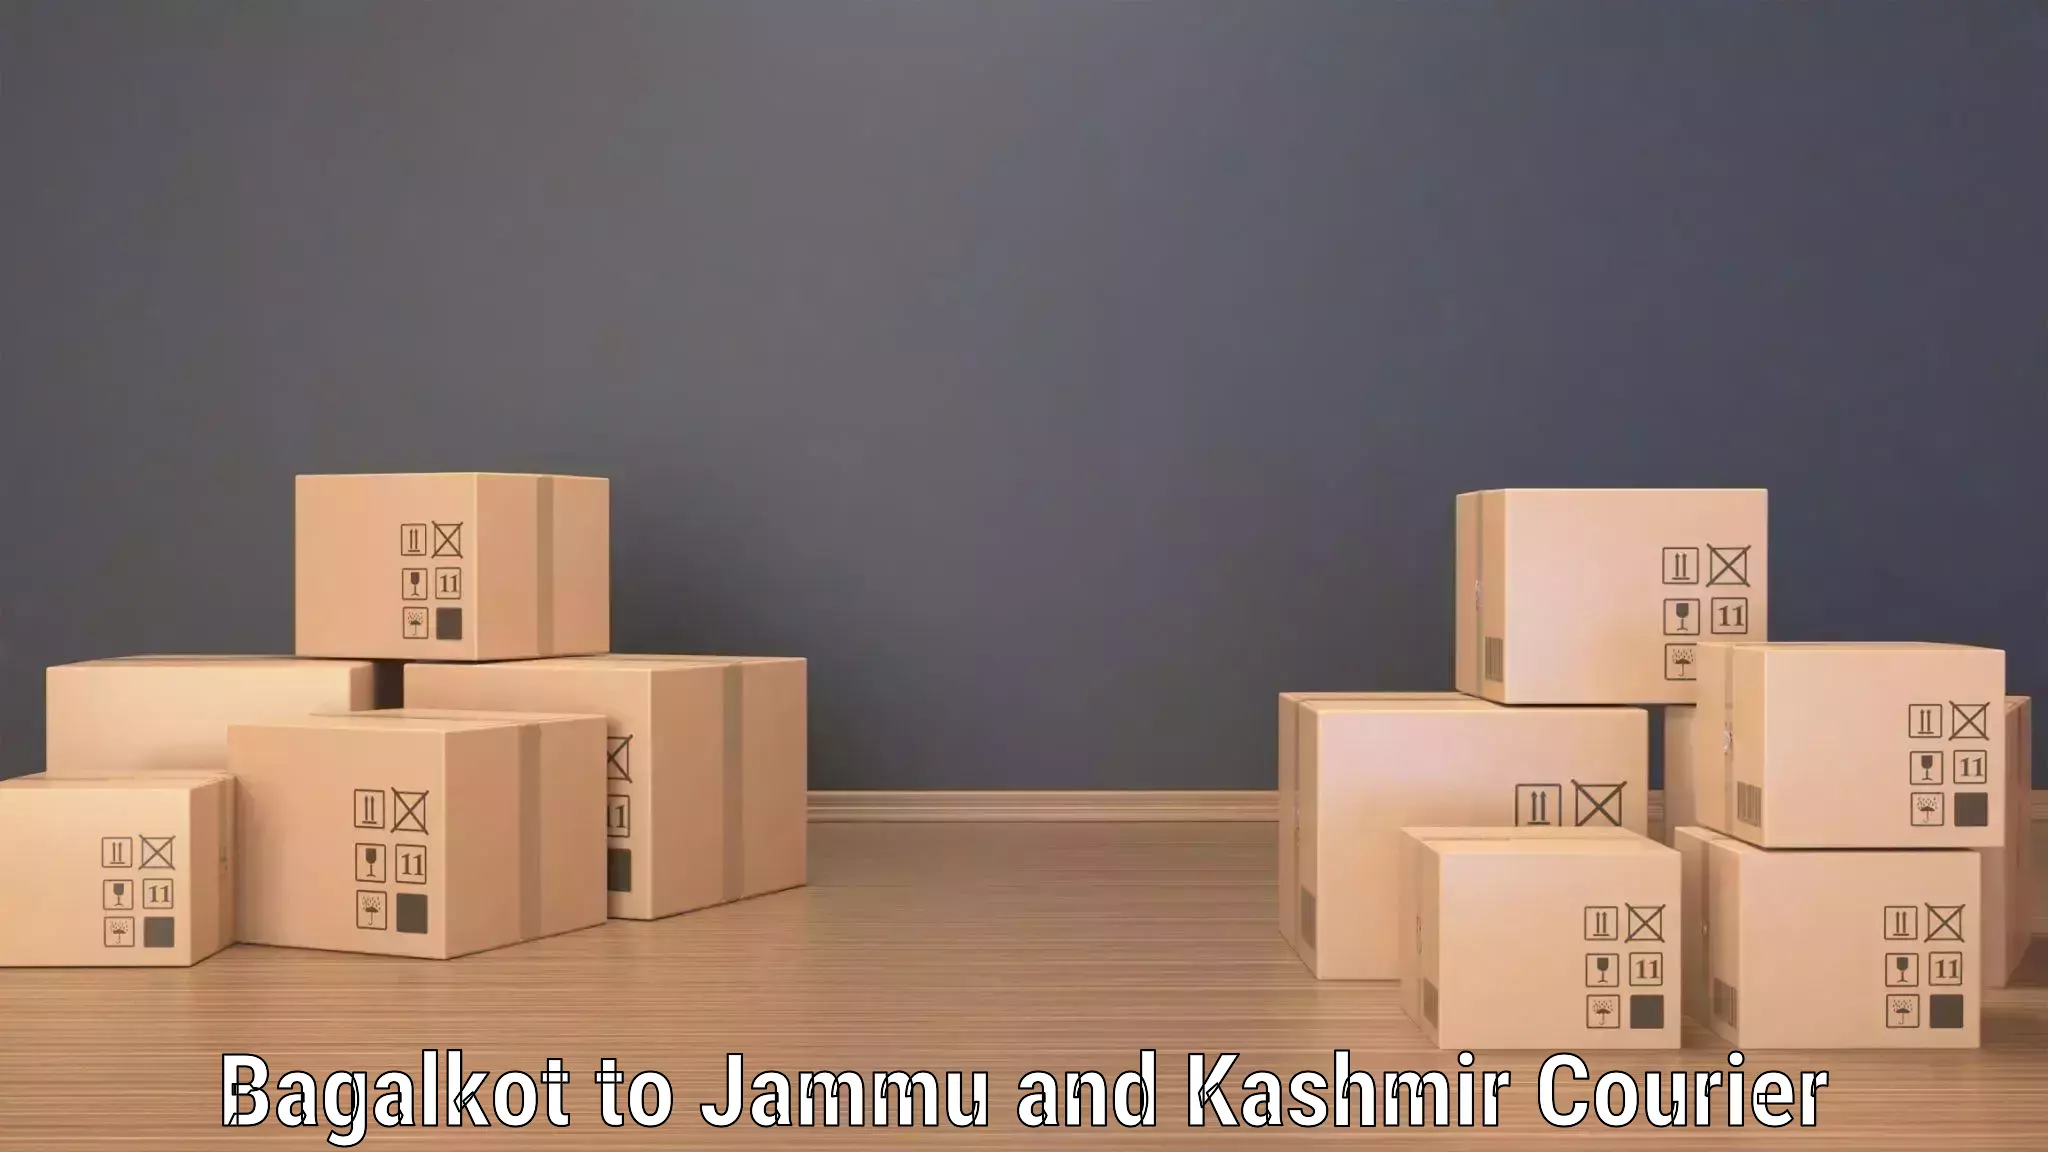 Logistics efficiency Bagalkot to Kishtwar